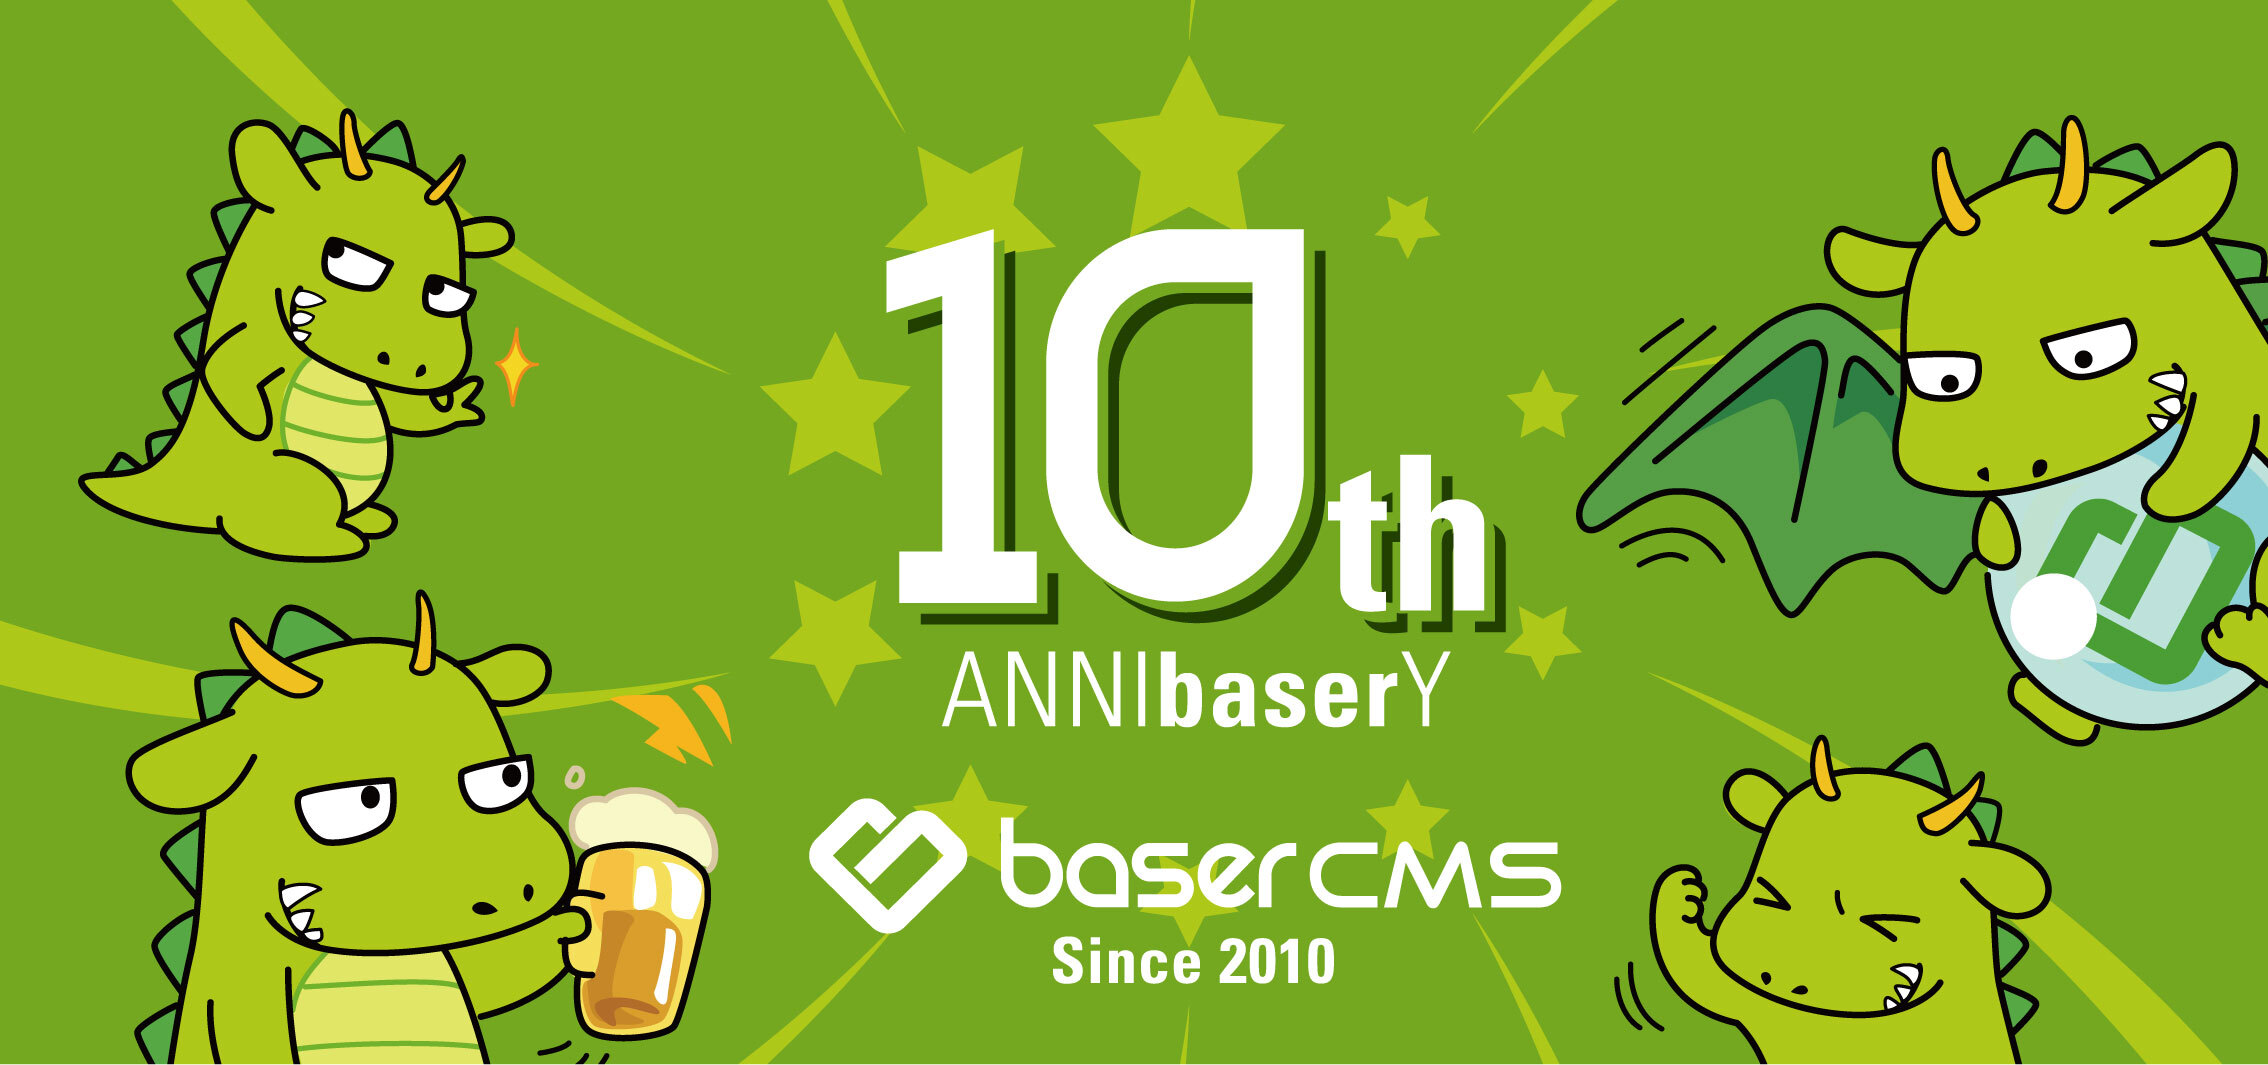 baserCMS10周年記念壁紙